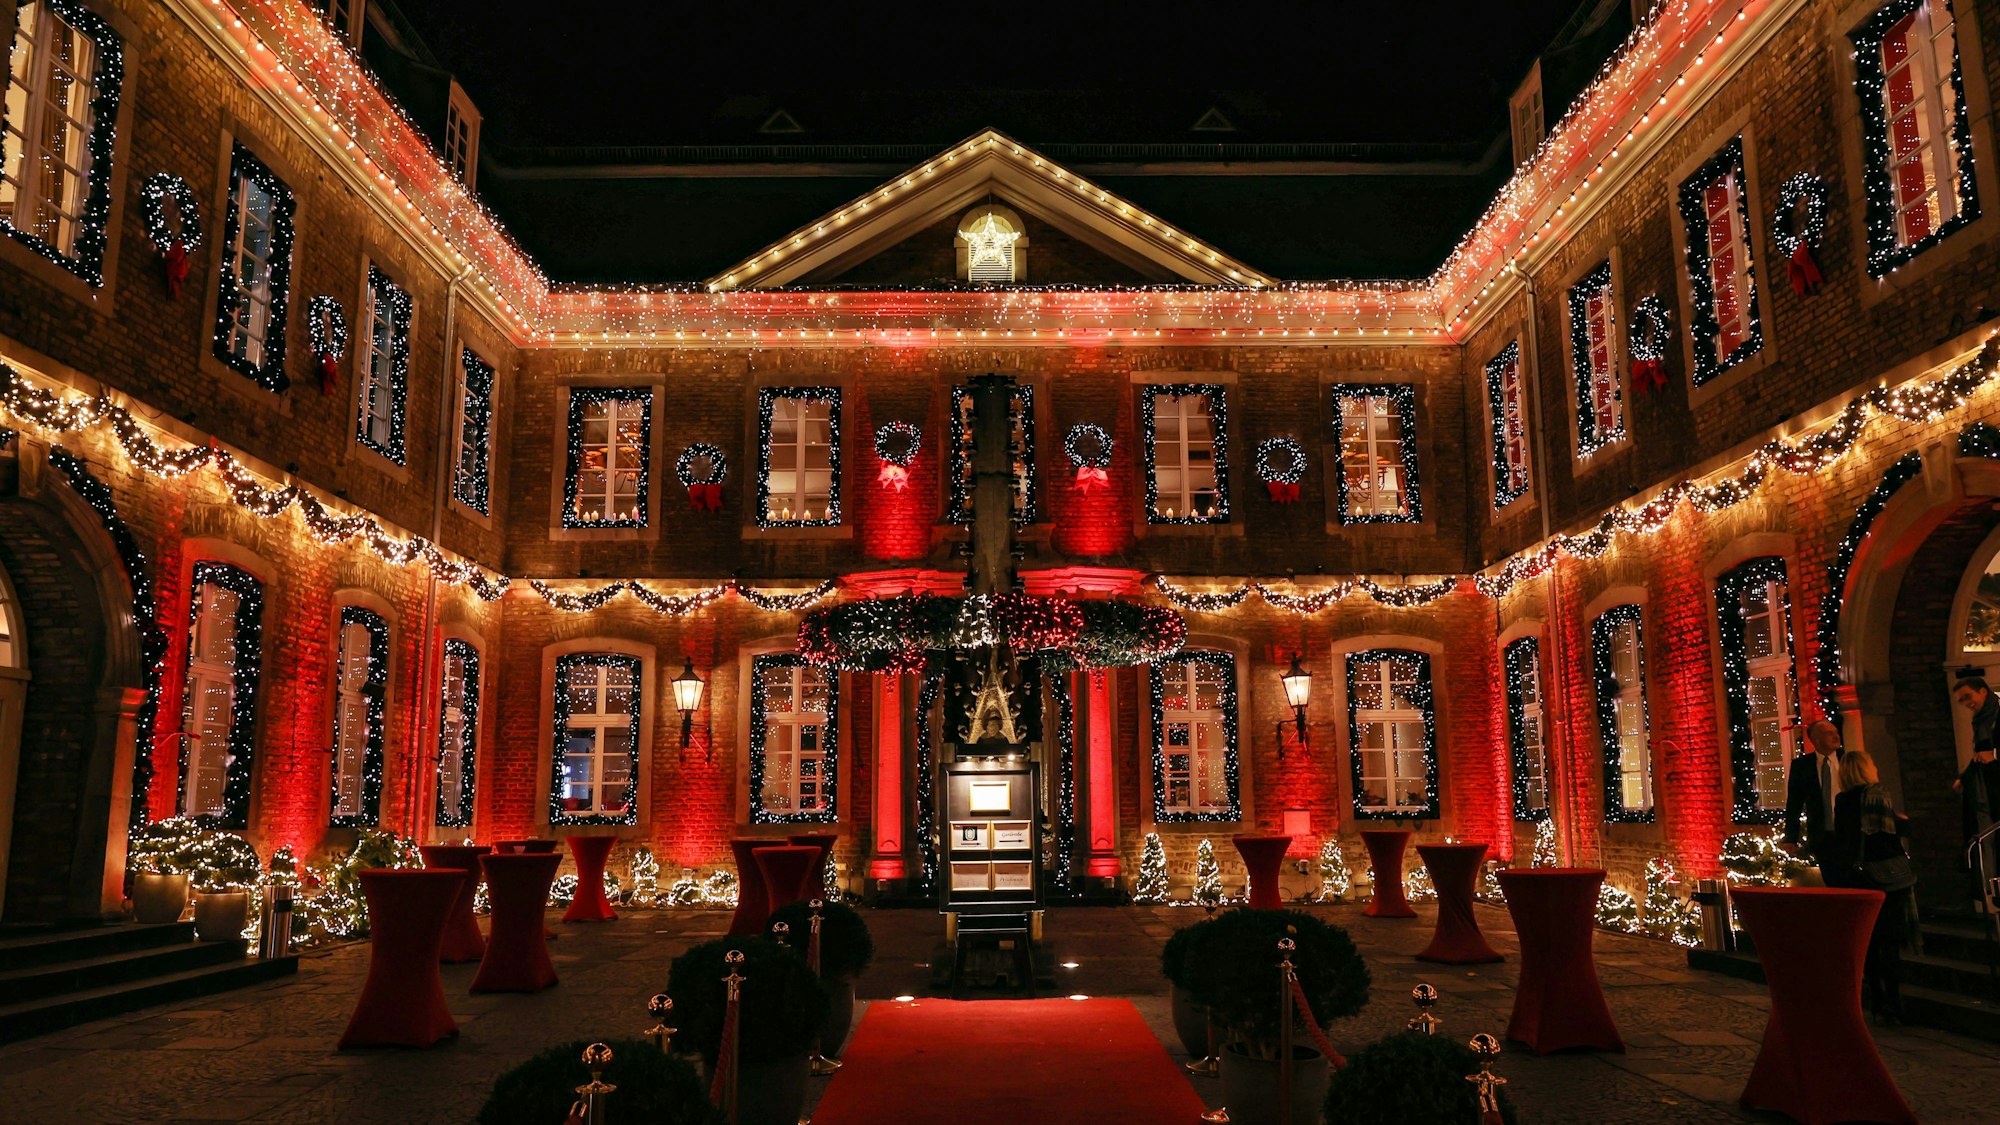 Der Innenhof der Wolkenburg ist mit zahlreichen Lichterketten sowie roten Scheinwerfern beleuchtet. An allen Fenstern hängen Girlanden.




